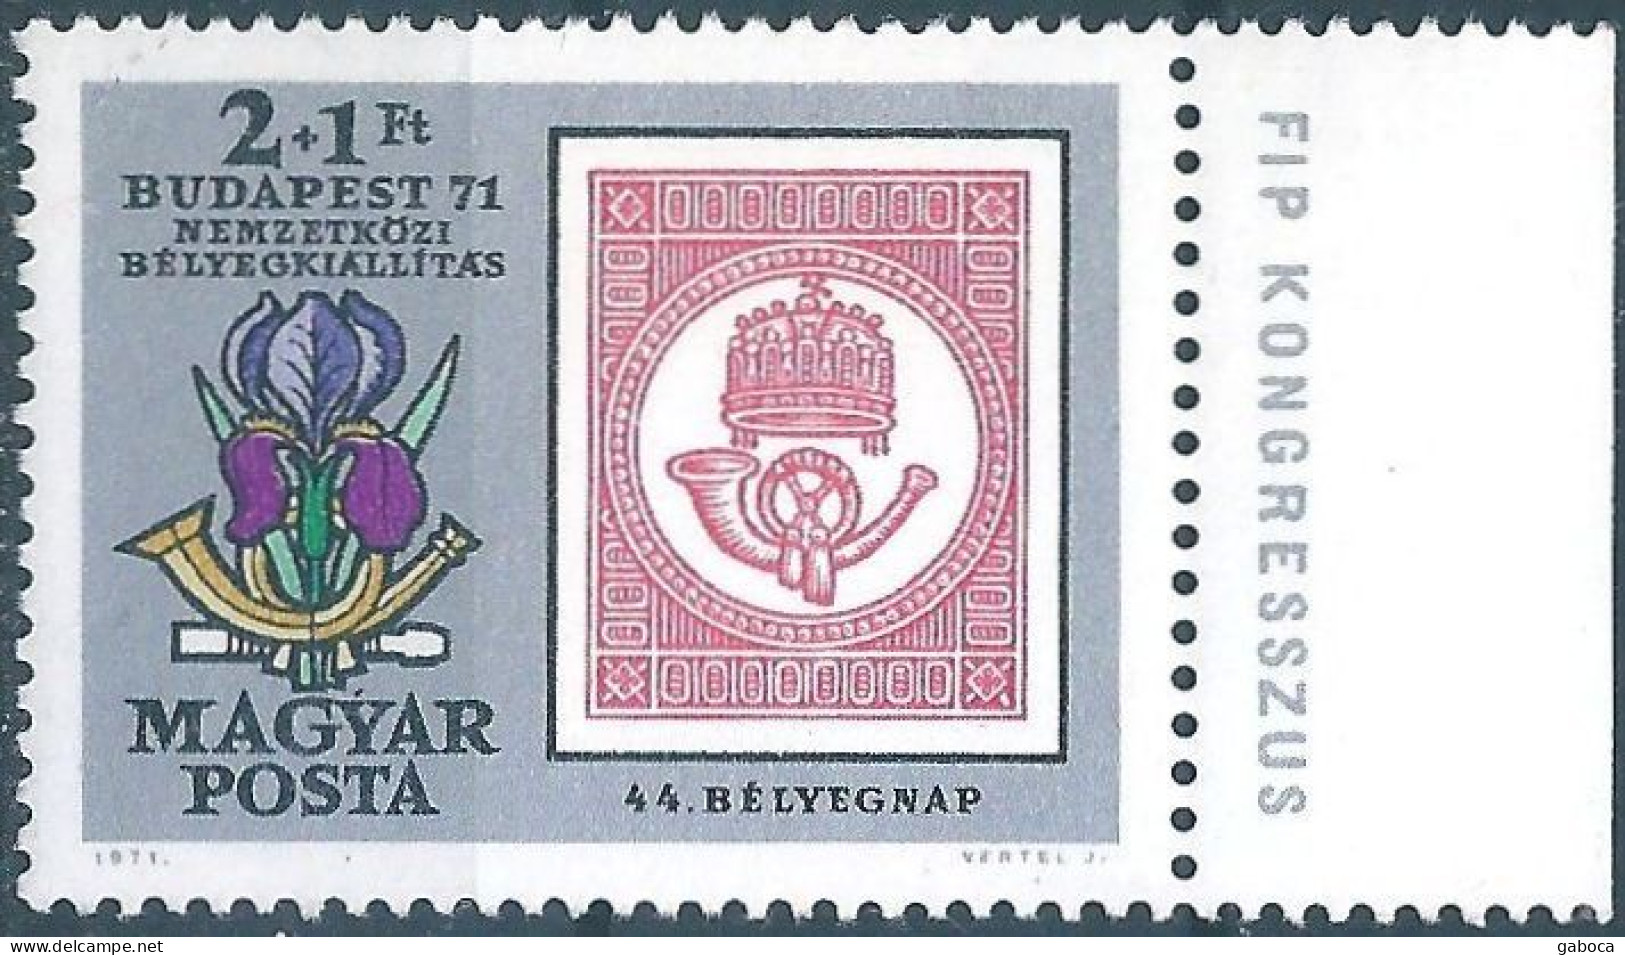 C5927 Hungary Philately Stamps Day Music Horn Flower MNH RARE - Giornata Del Francobollo